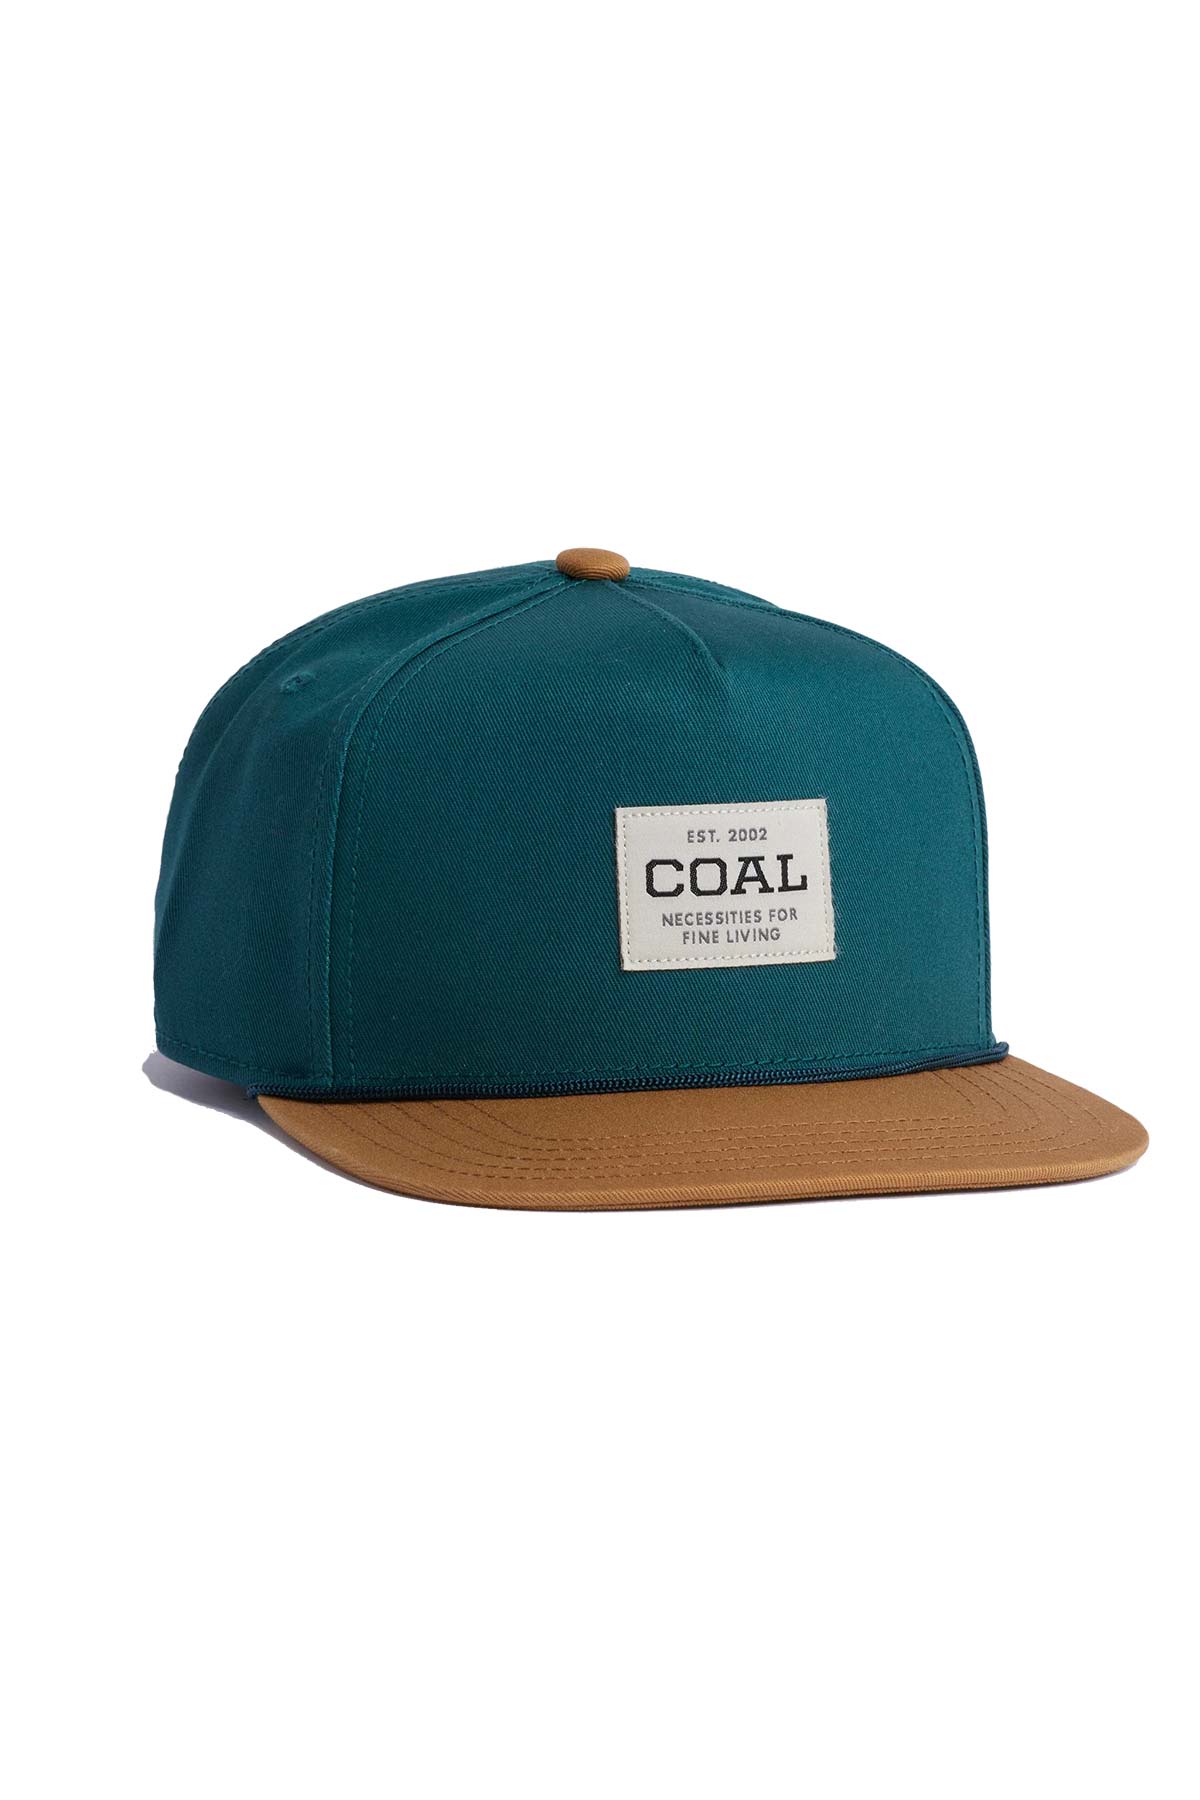 Coal - The Uniform Cap - Mallard - Front